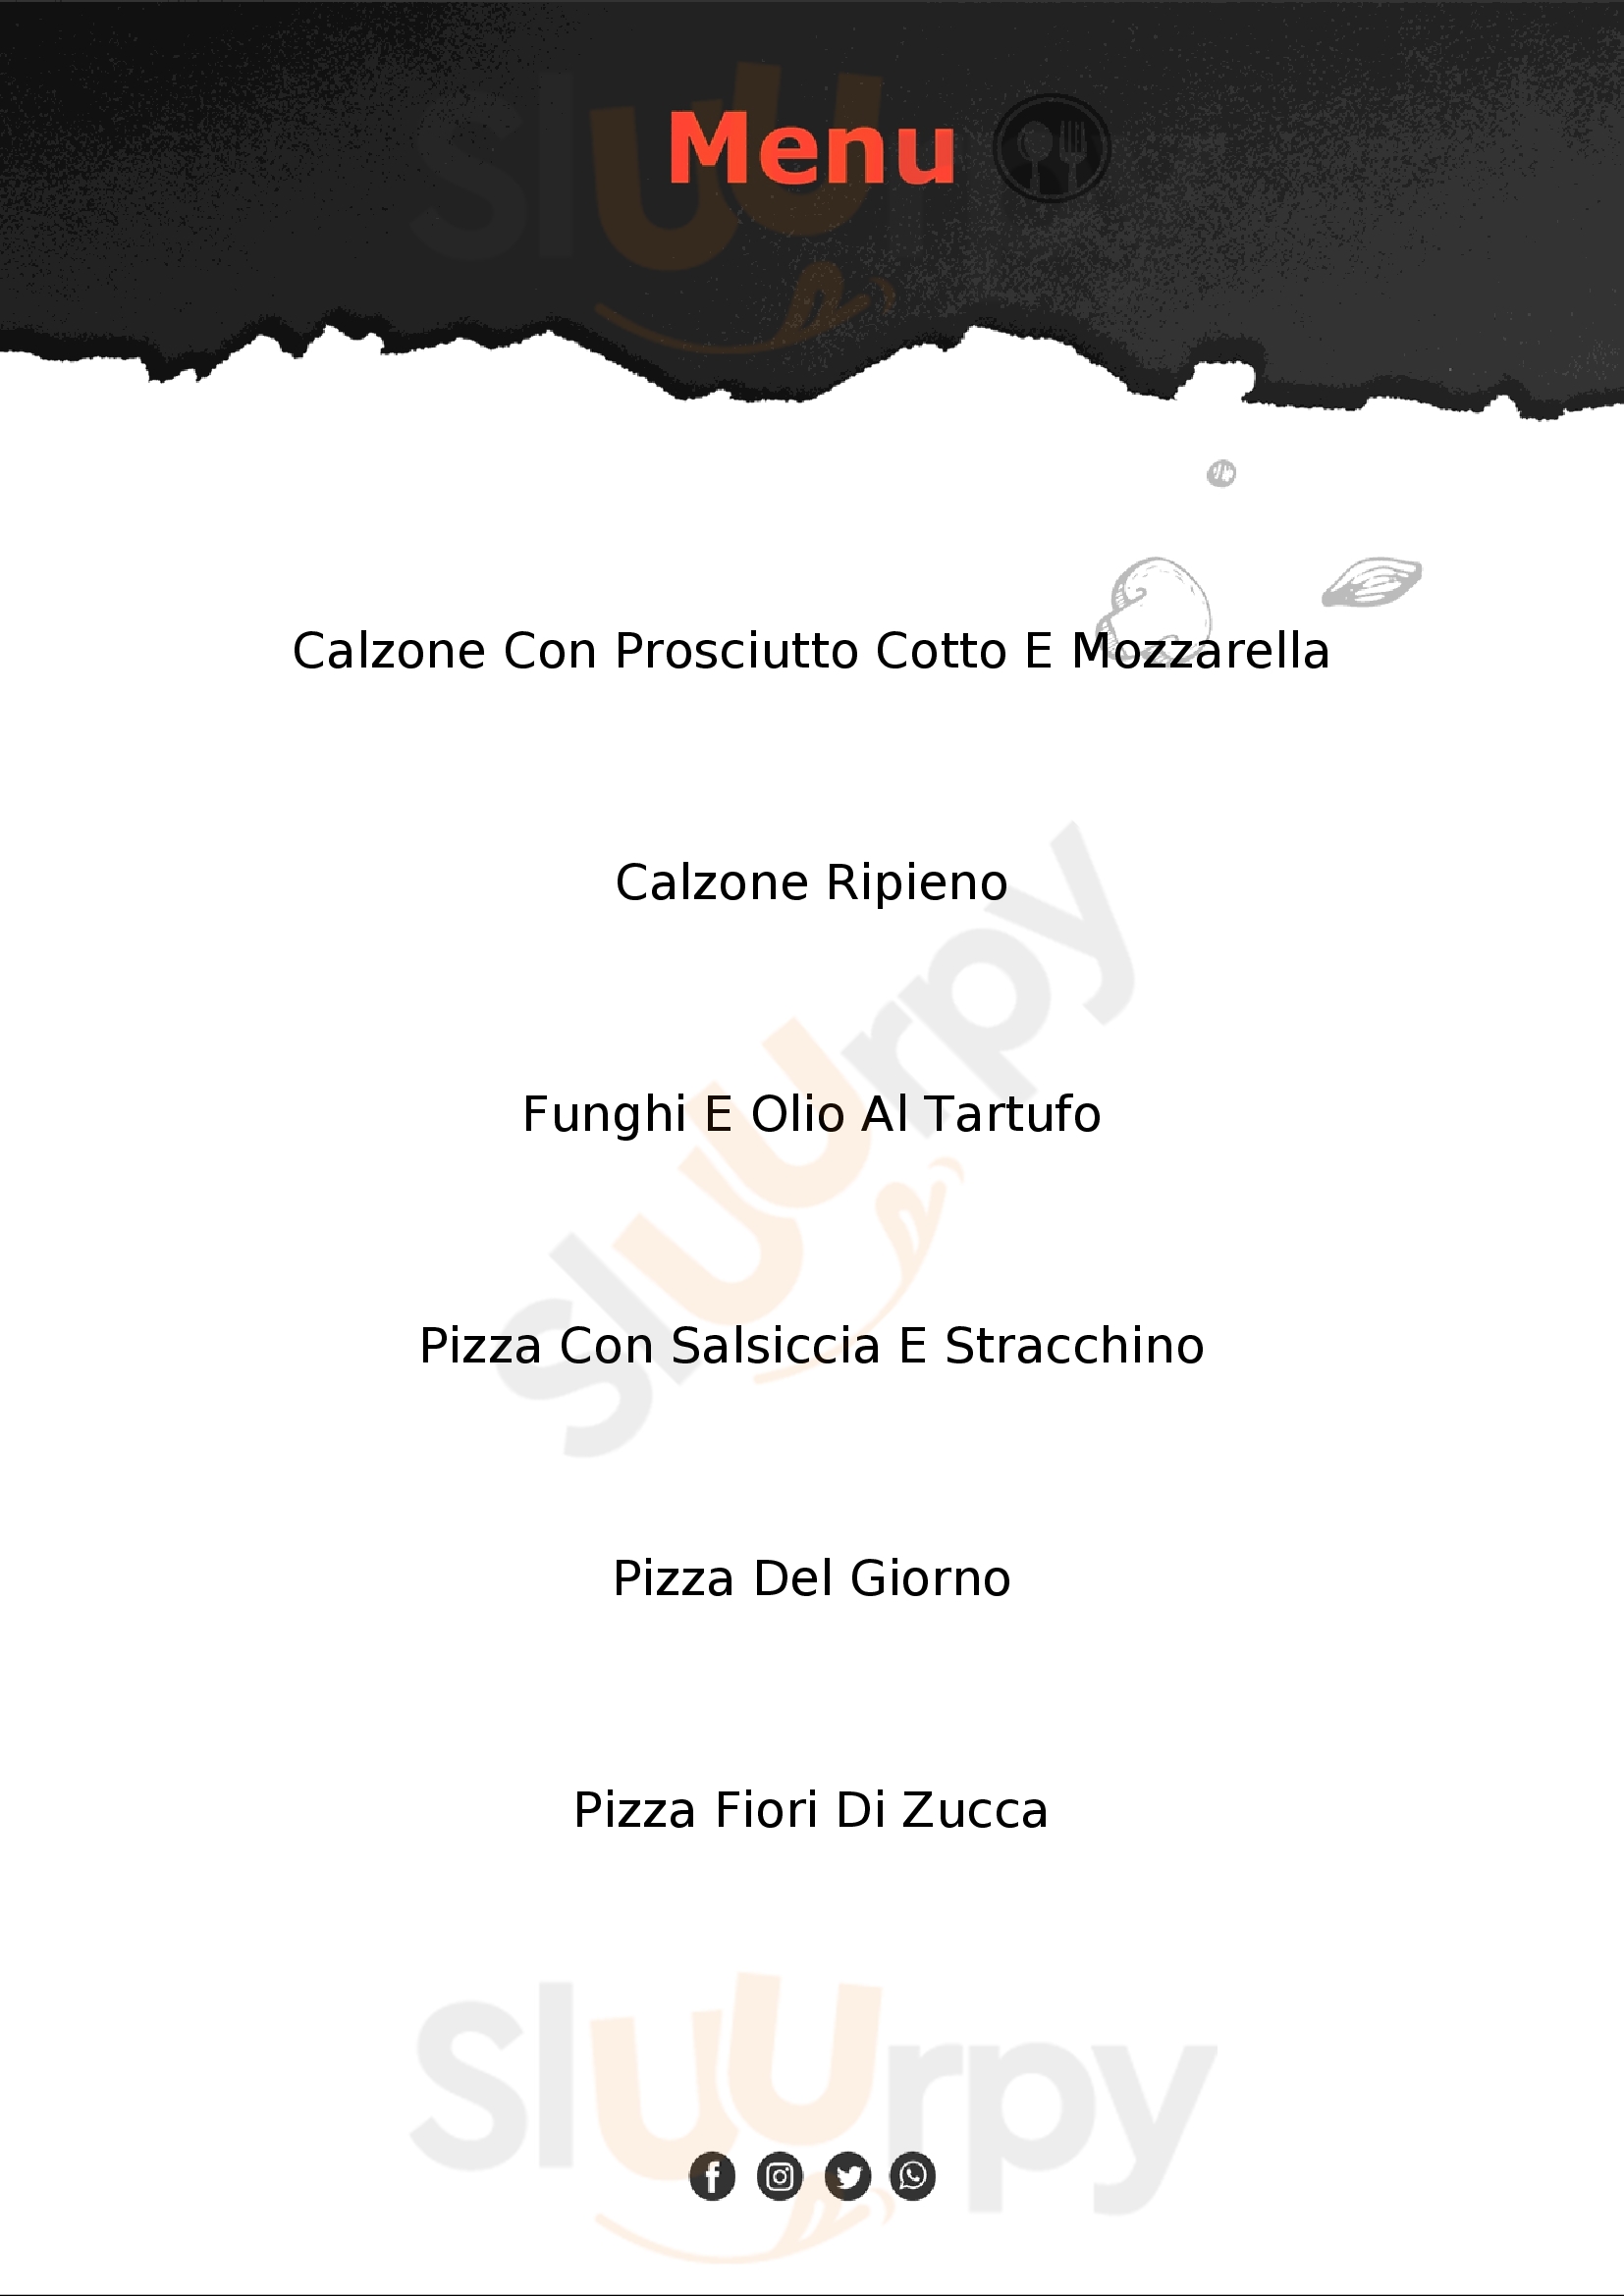 Pizzeria La Terrazza in campagna Pitigliano menù 1 pagina